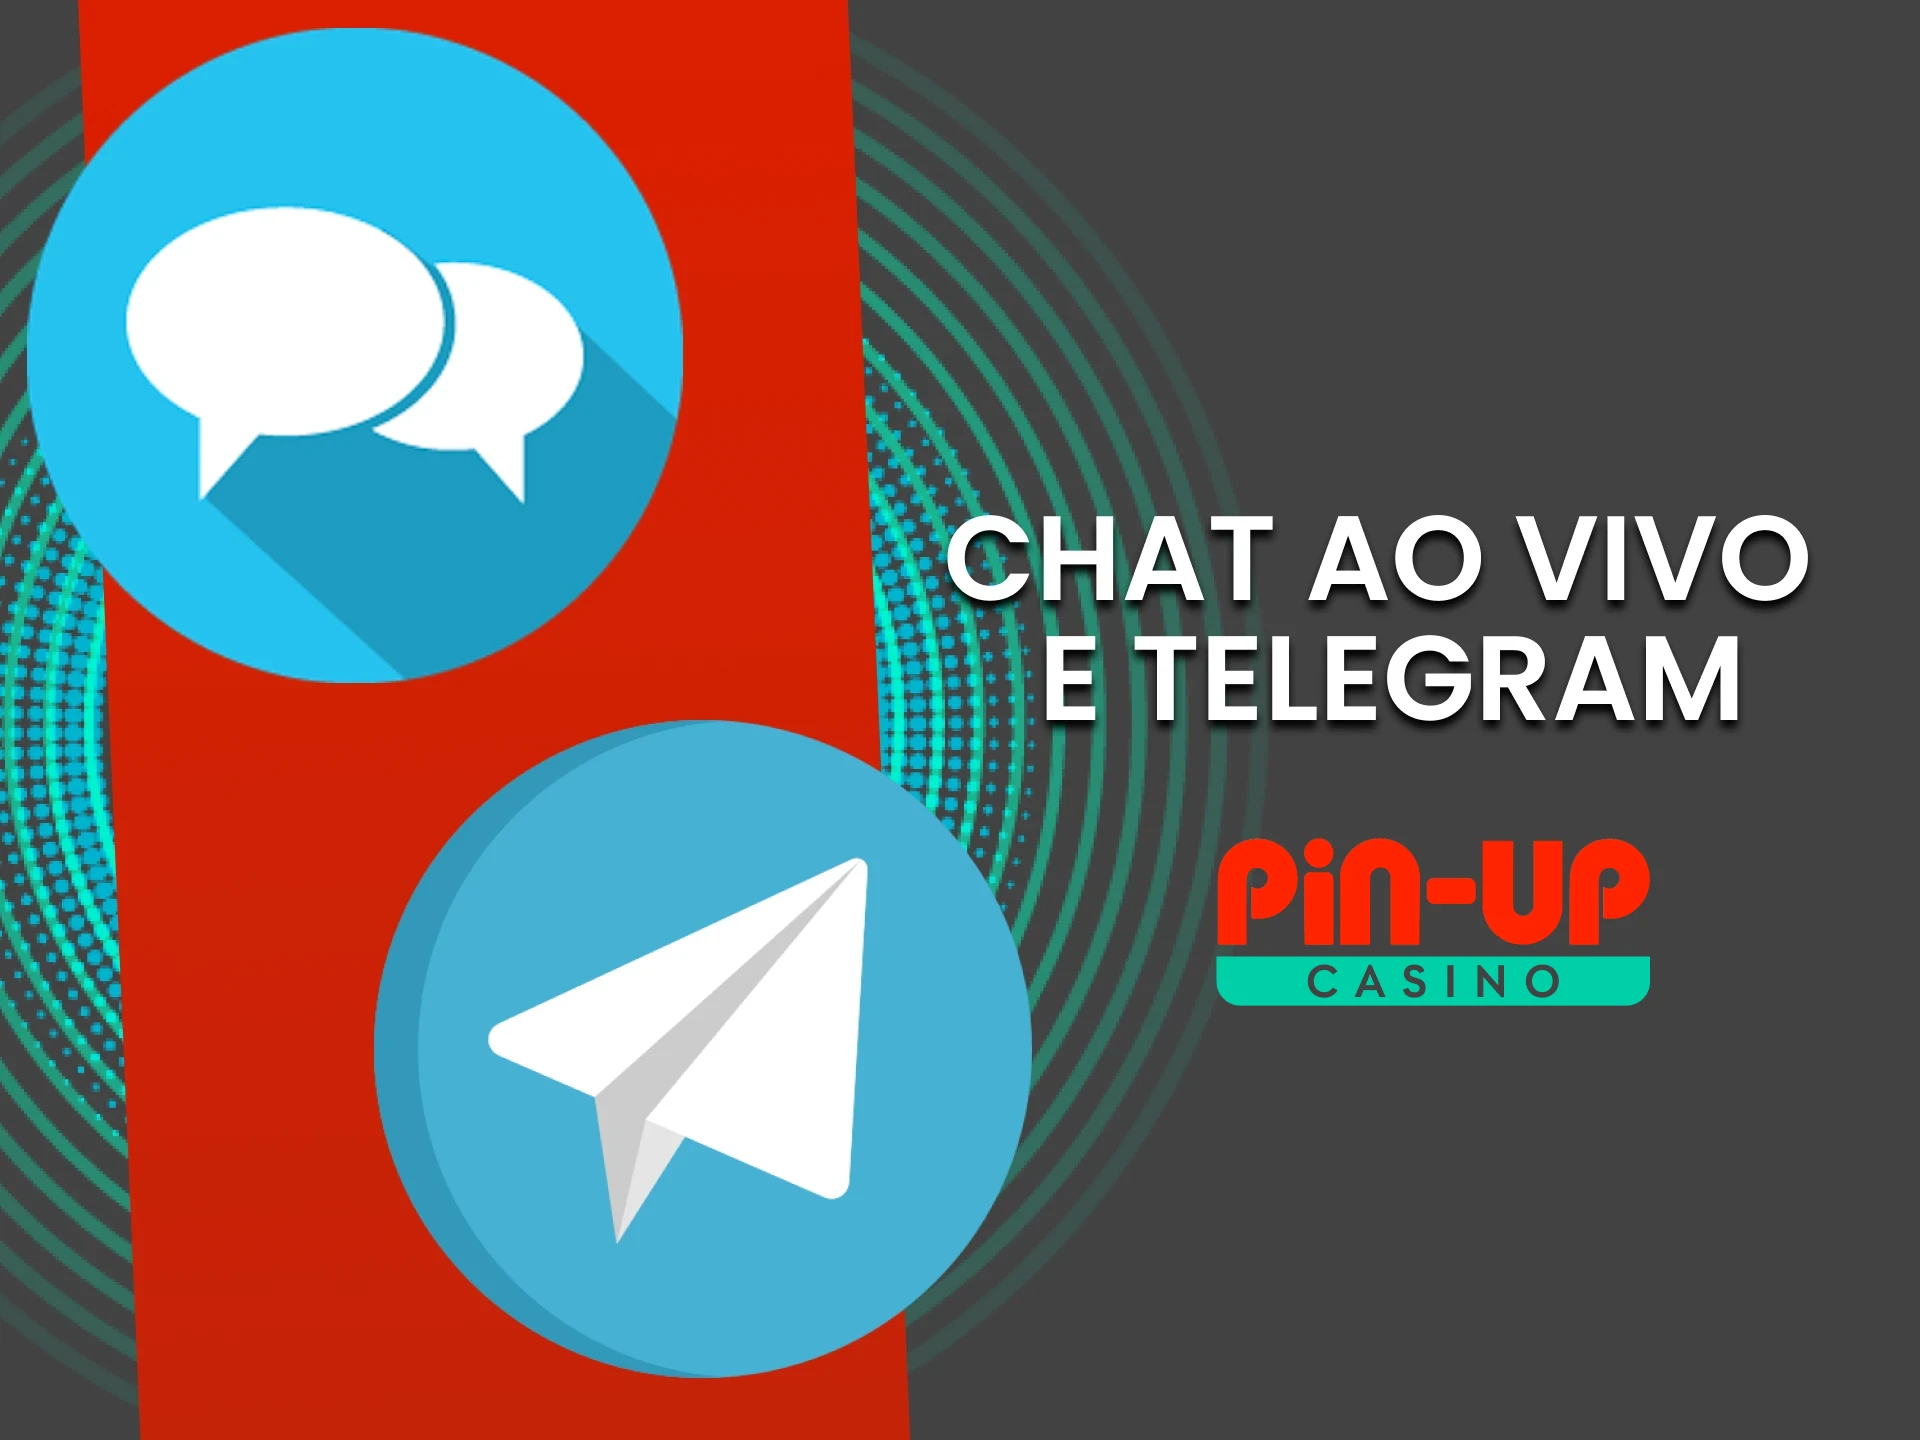 Você pode entrar em contato com a equipe PinUp via chat de Telegram.